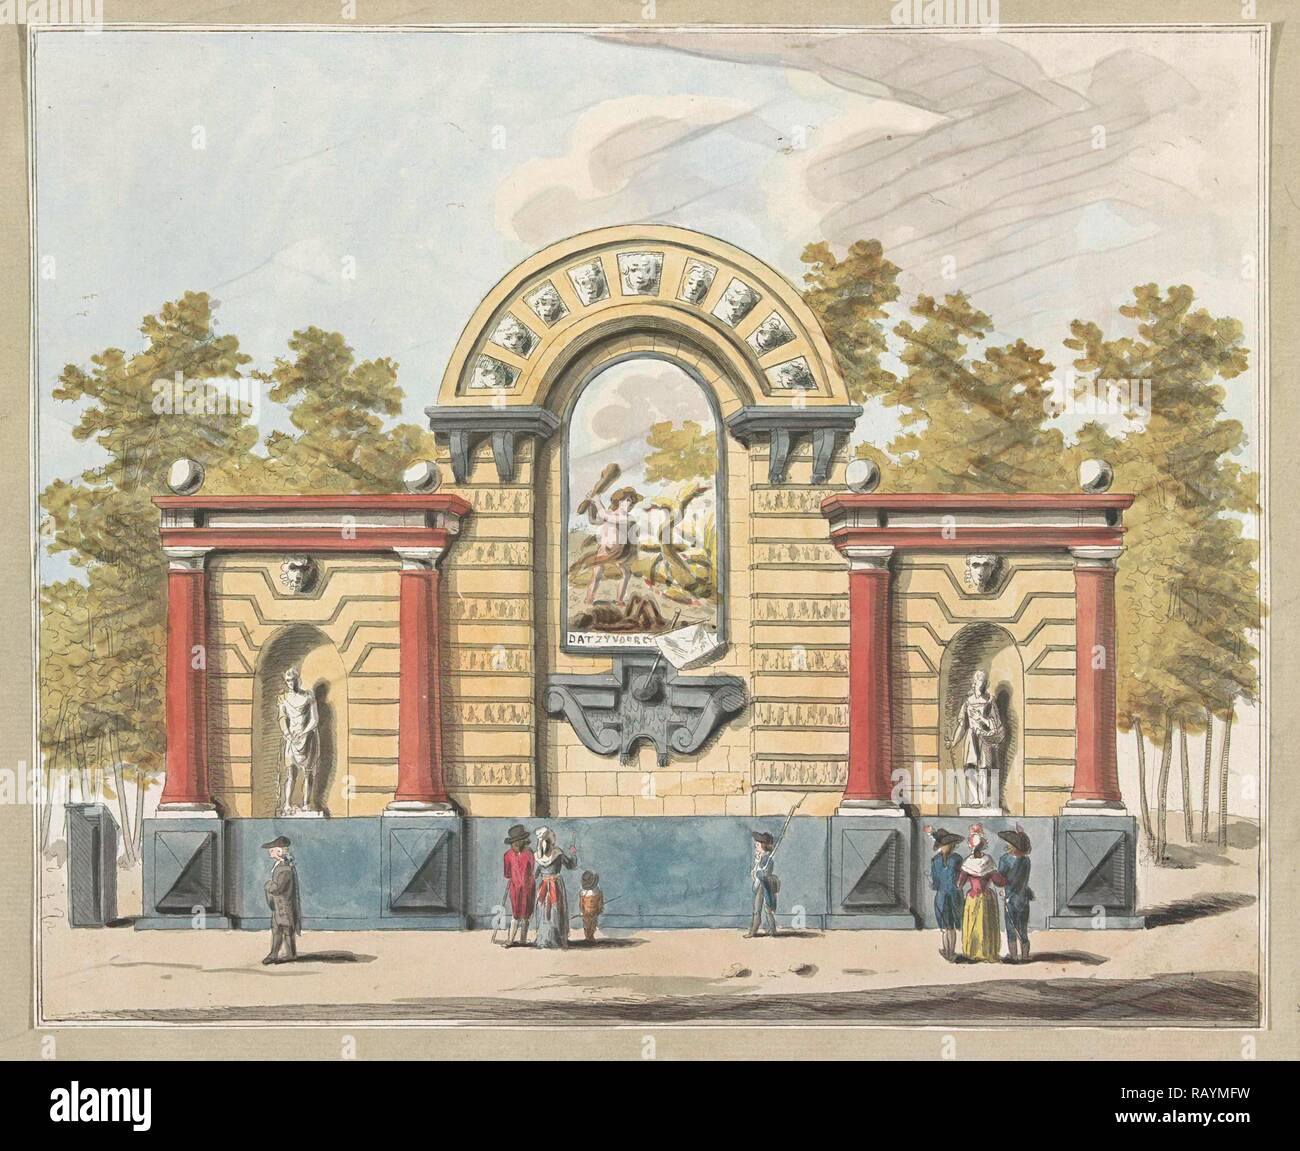 La destruction de l'aristocratie, la décoration sur le marché de l'Ouest, 1795, A. Verkerk, Johannes Roelof Poster, 1795 repensé Banque D'Images